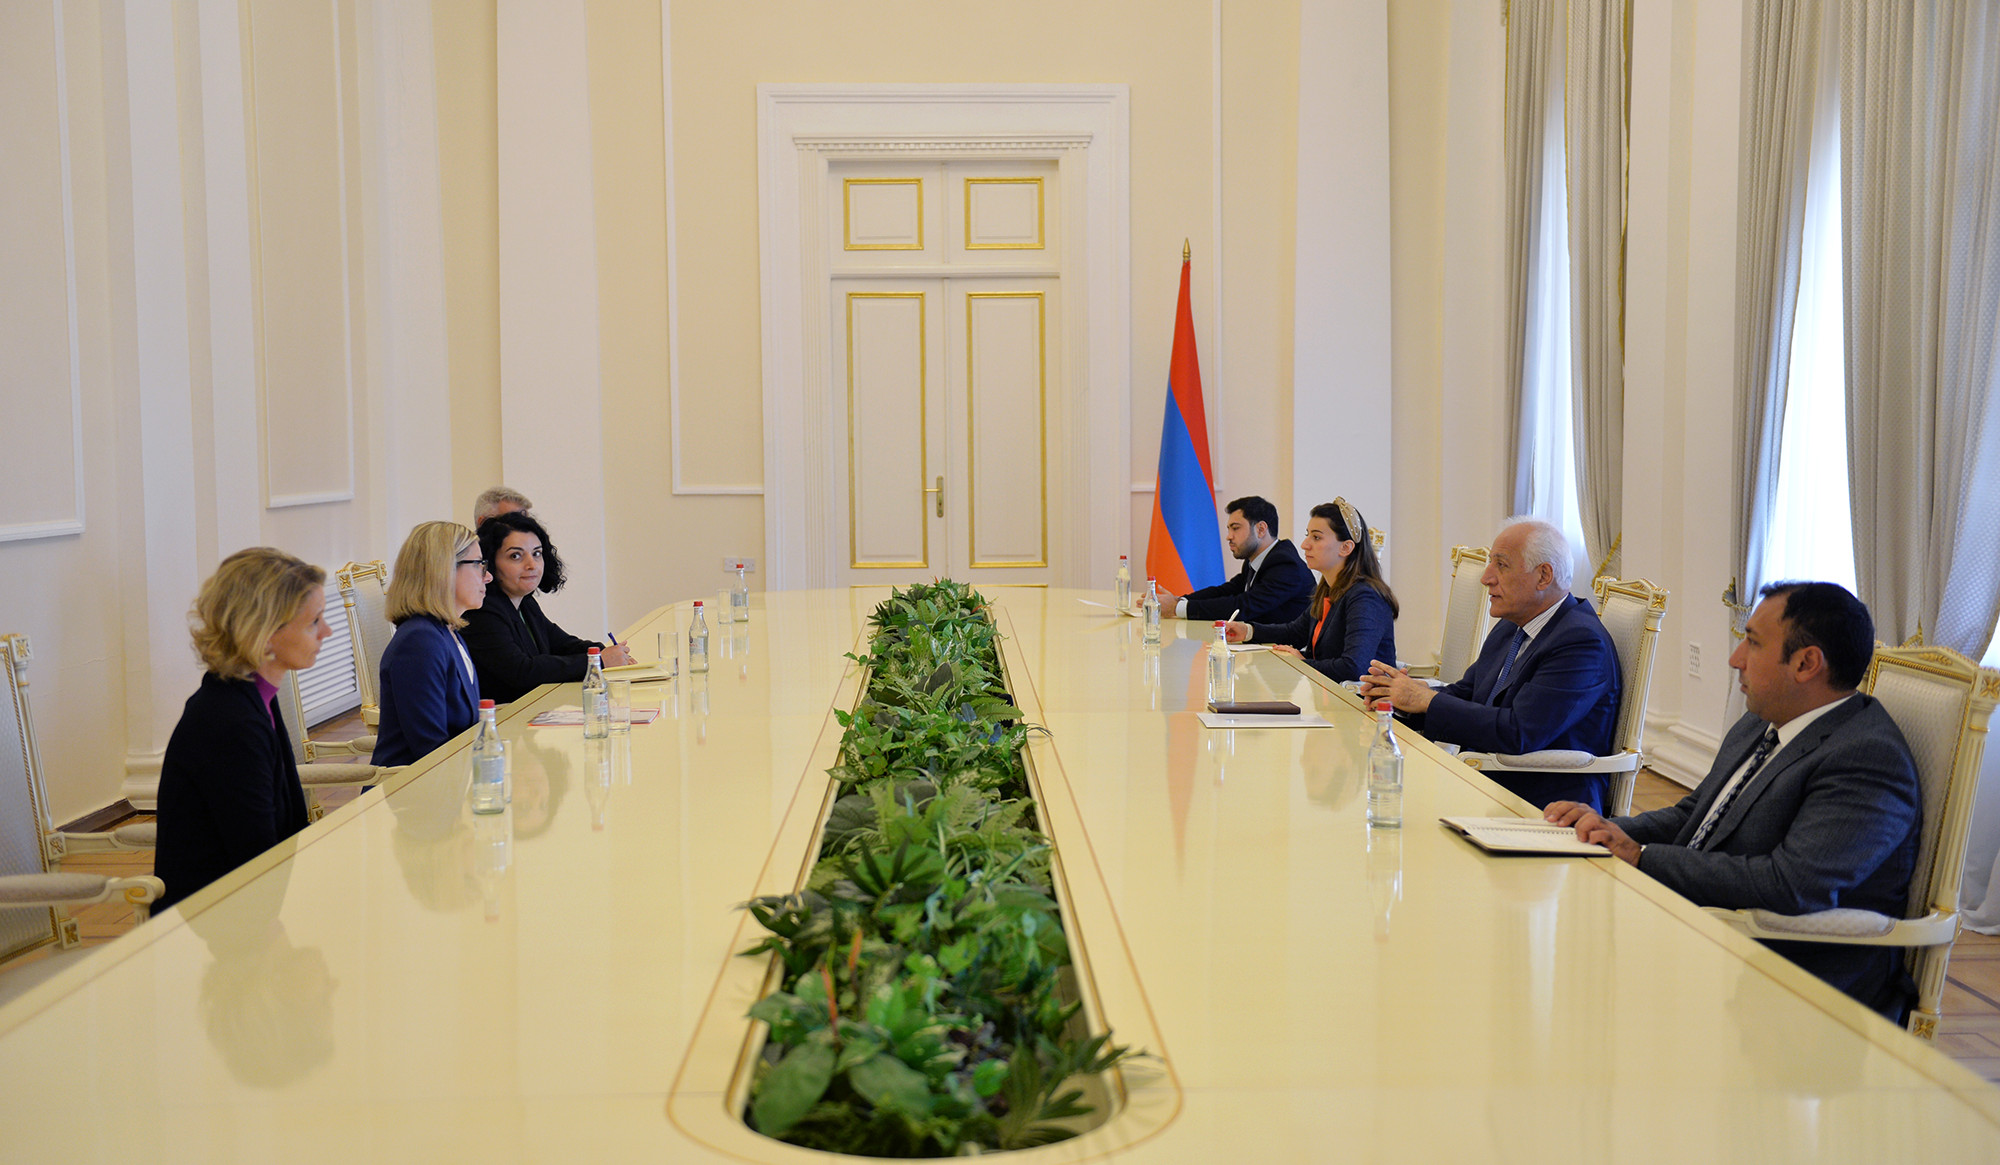 Համաշխարհային բանկն ավանդաբար կարևոր դեր է ունեցել Հայաստանի տնտեսության կայուն զարգացման գործում. Վահագն Խաչատուրյան